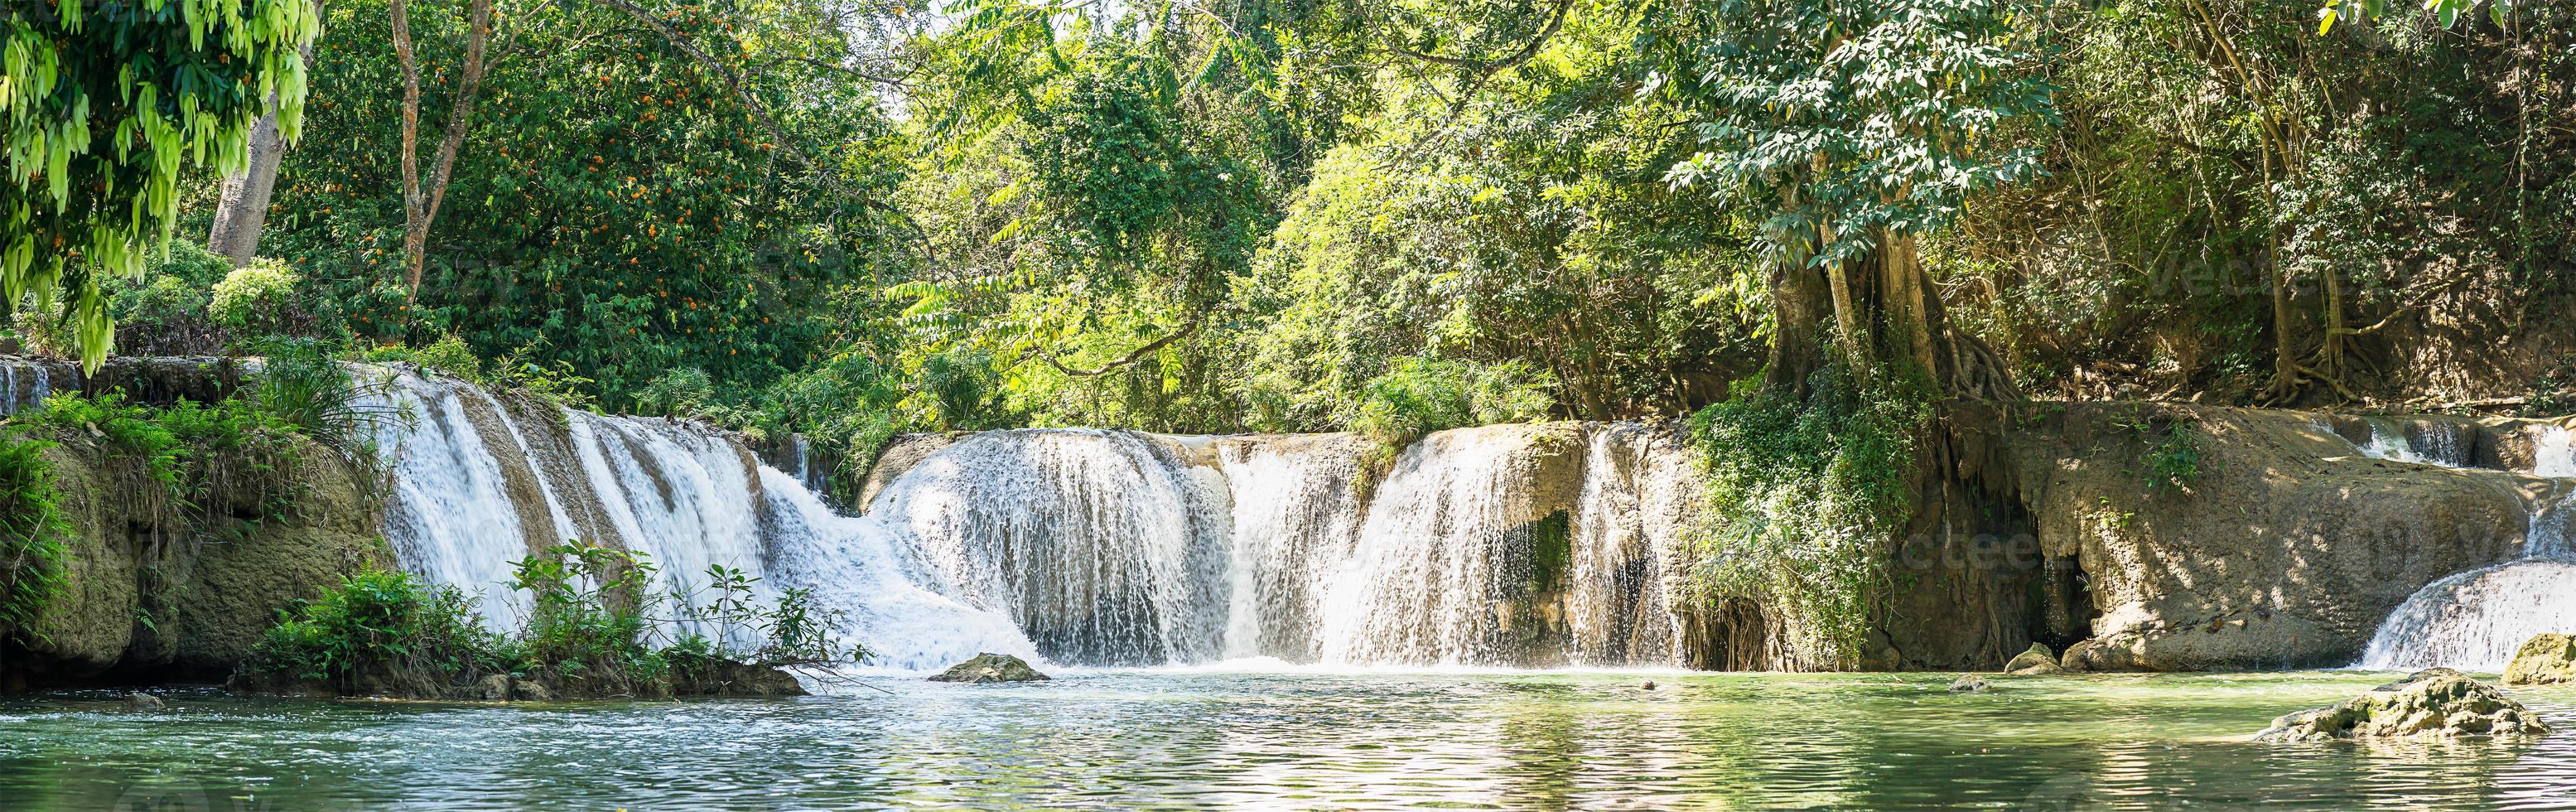 Panorama Chet Sao Noi waterfall in national park photo